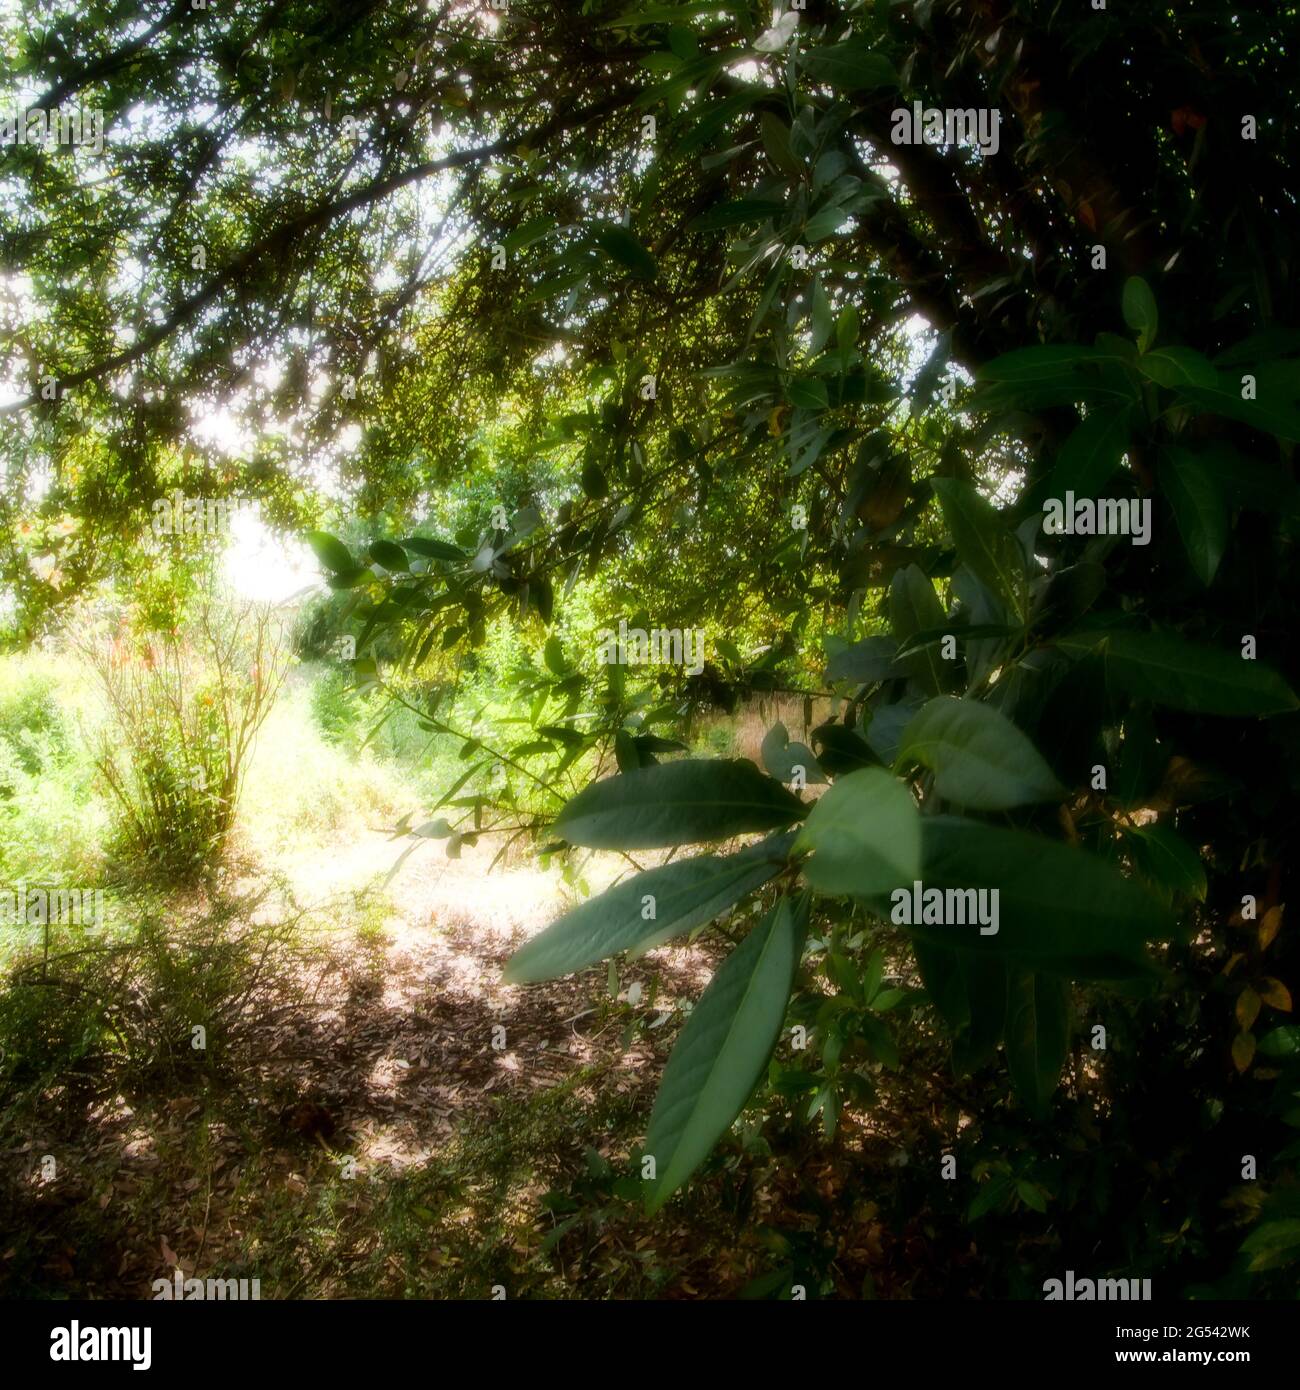 Exuberante vegetación en un jardín abandonado, Vaulx-en-Velin, Francia Foto de stock